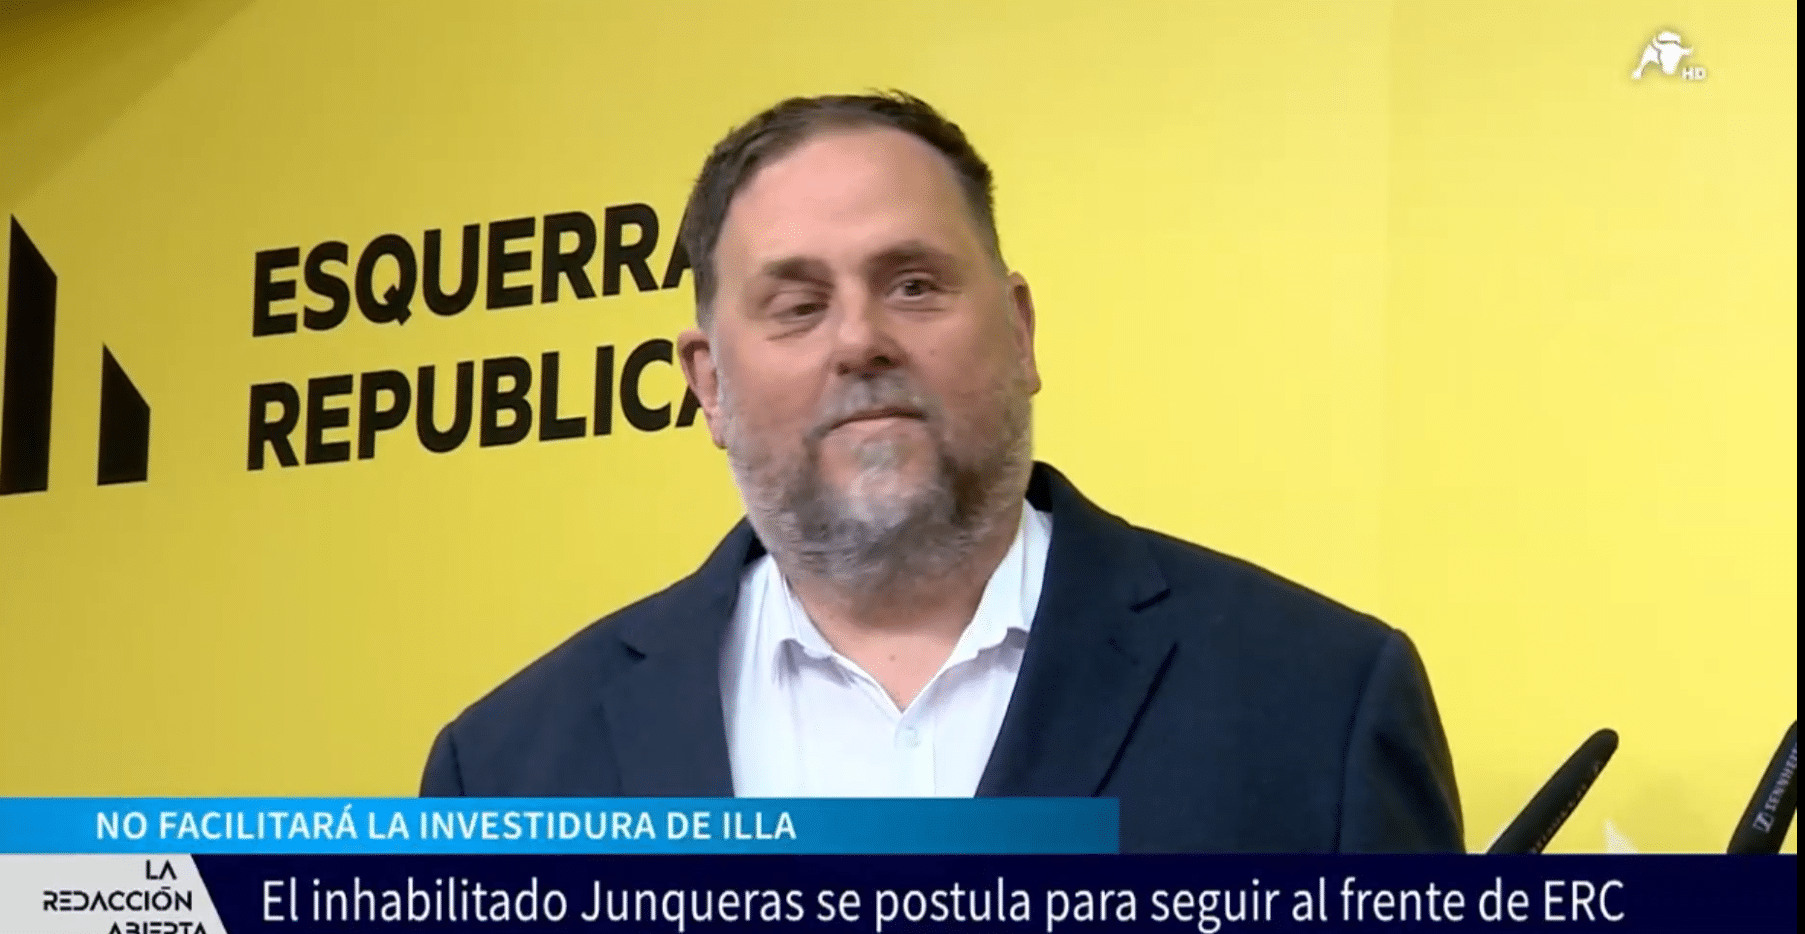 Oriol Junqueras se postula para seguir al frente de ERC y anuncia que no facilitará la investidura de Illa